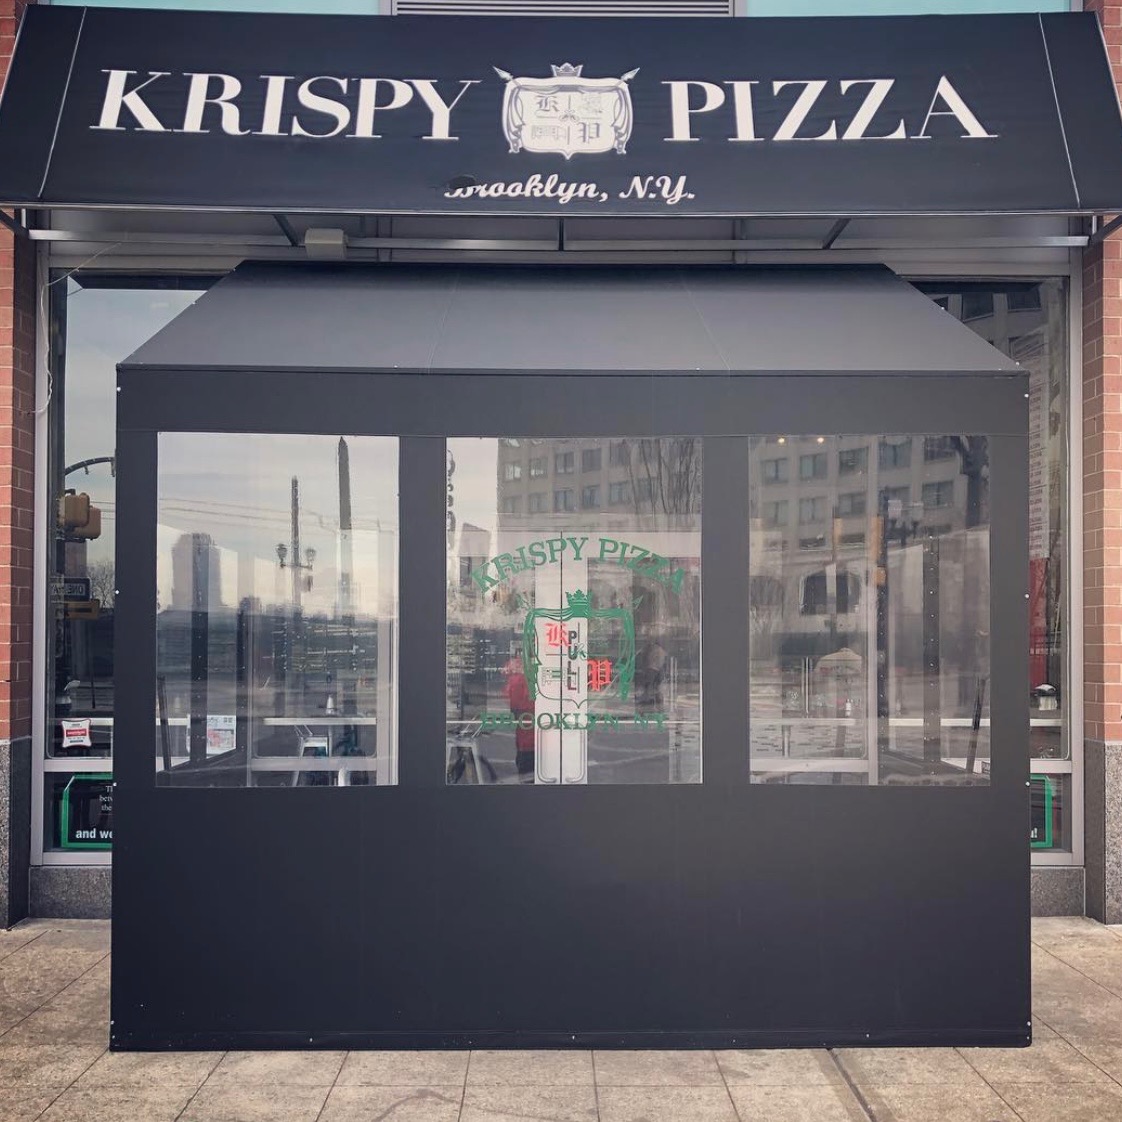 Krispy pizza jersey city